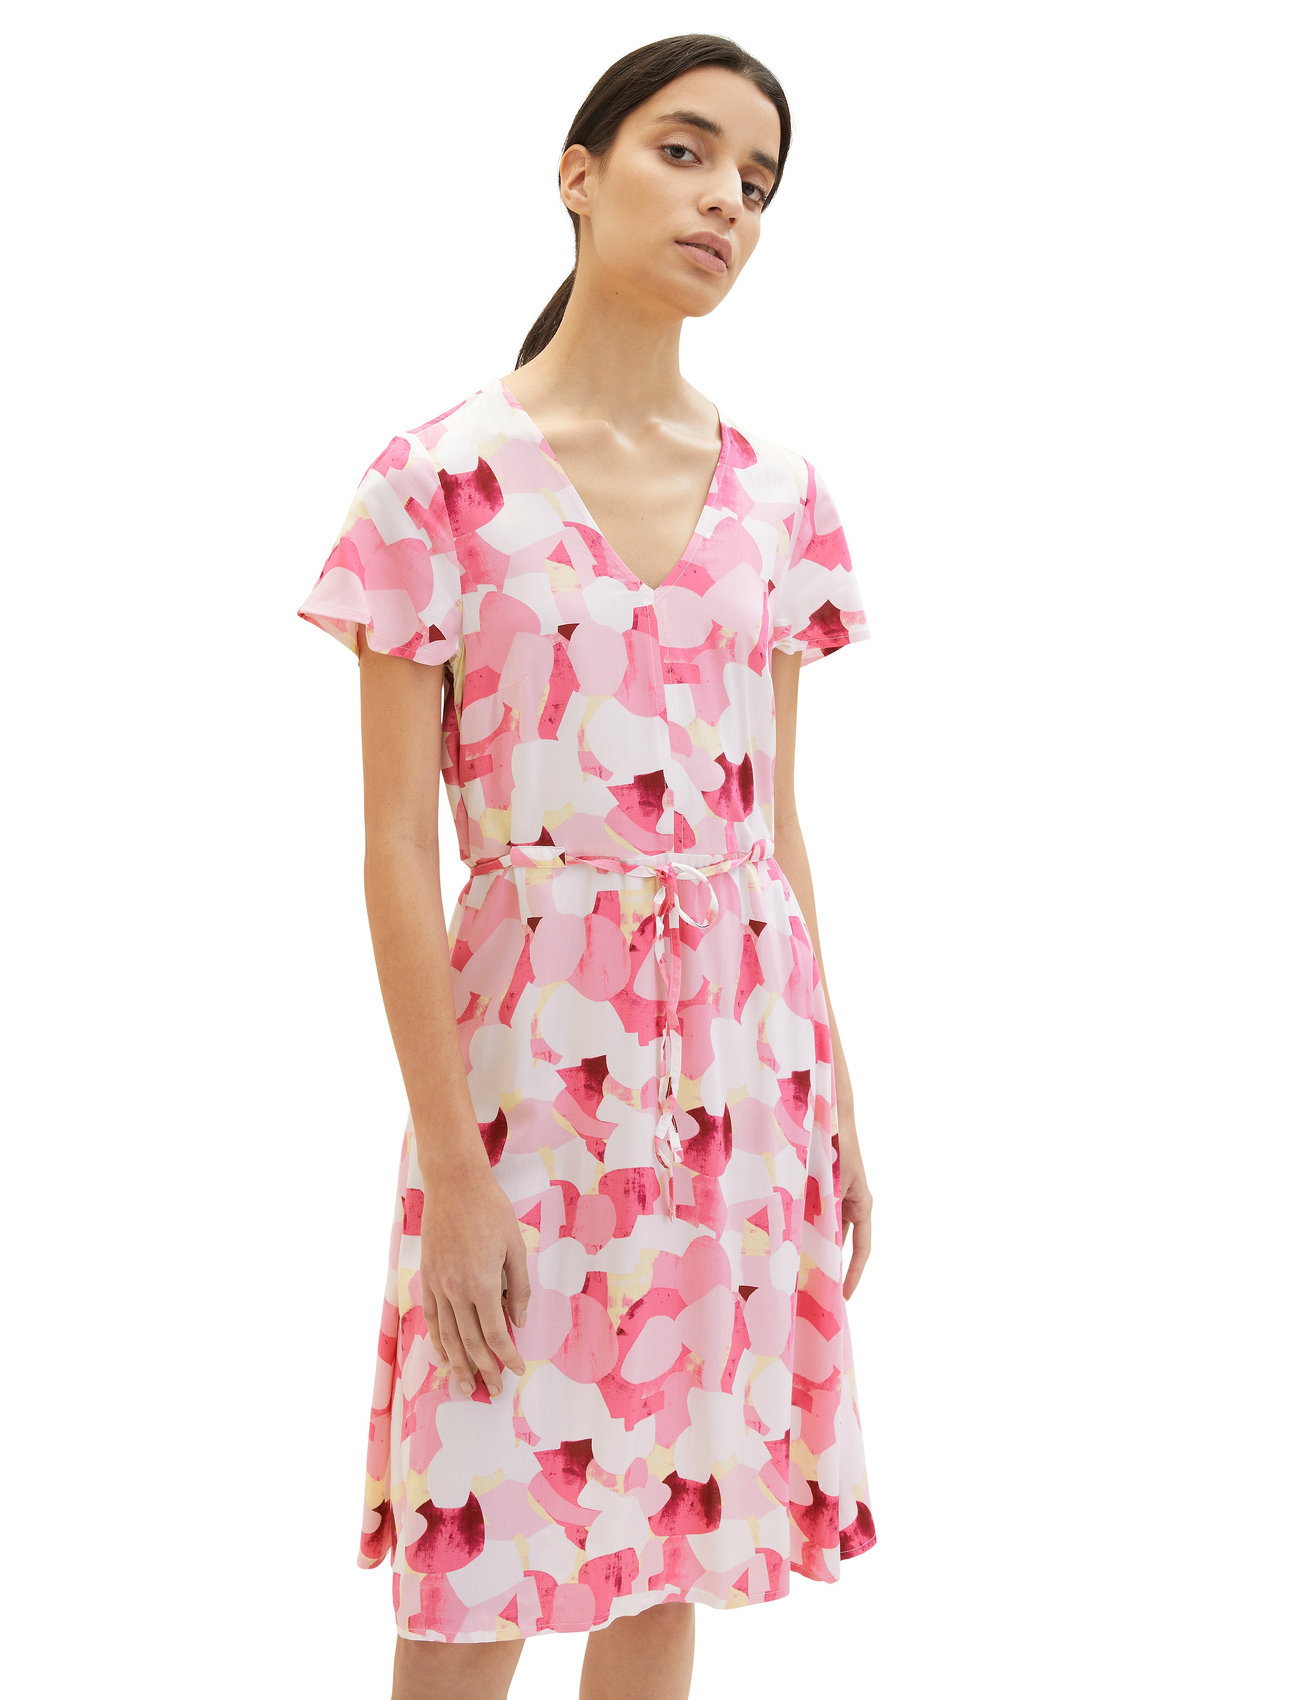 Tom Tailor - printed dress with belt - omlottklänning - pink shapes design - 1